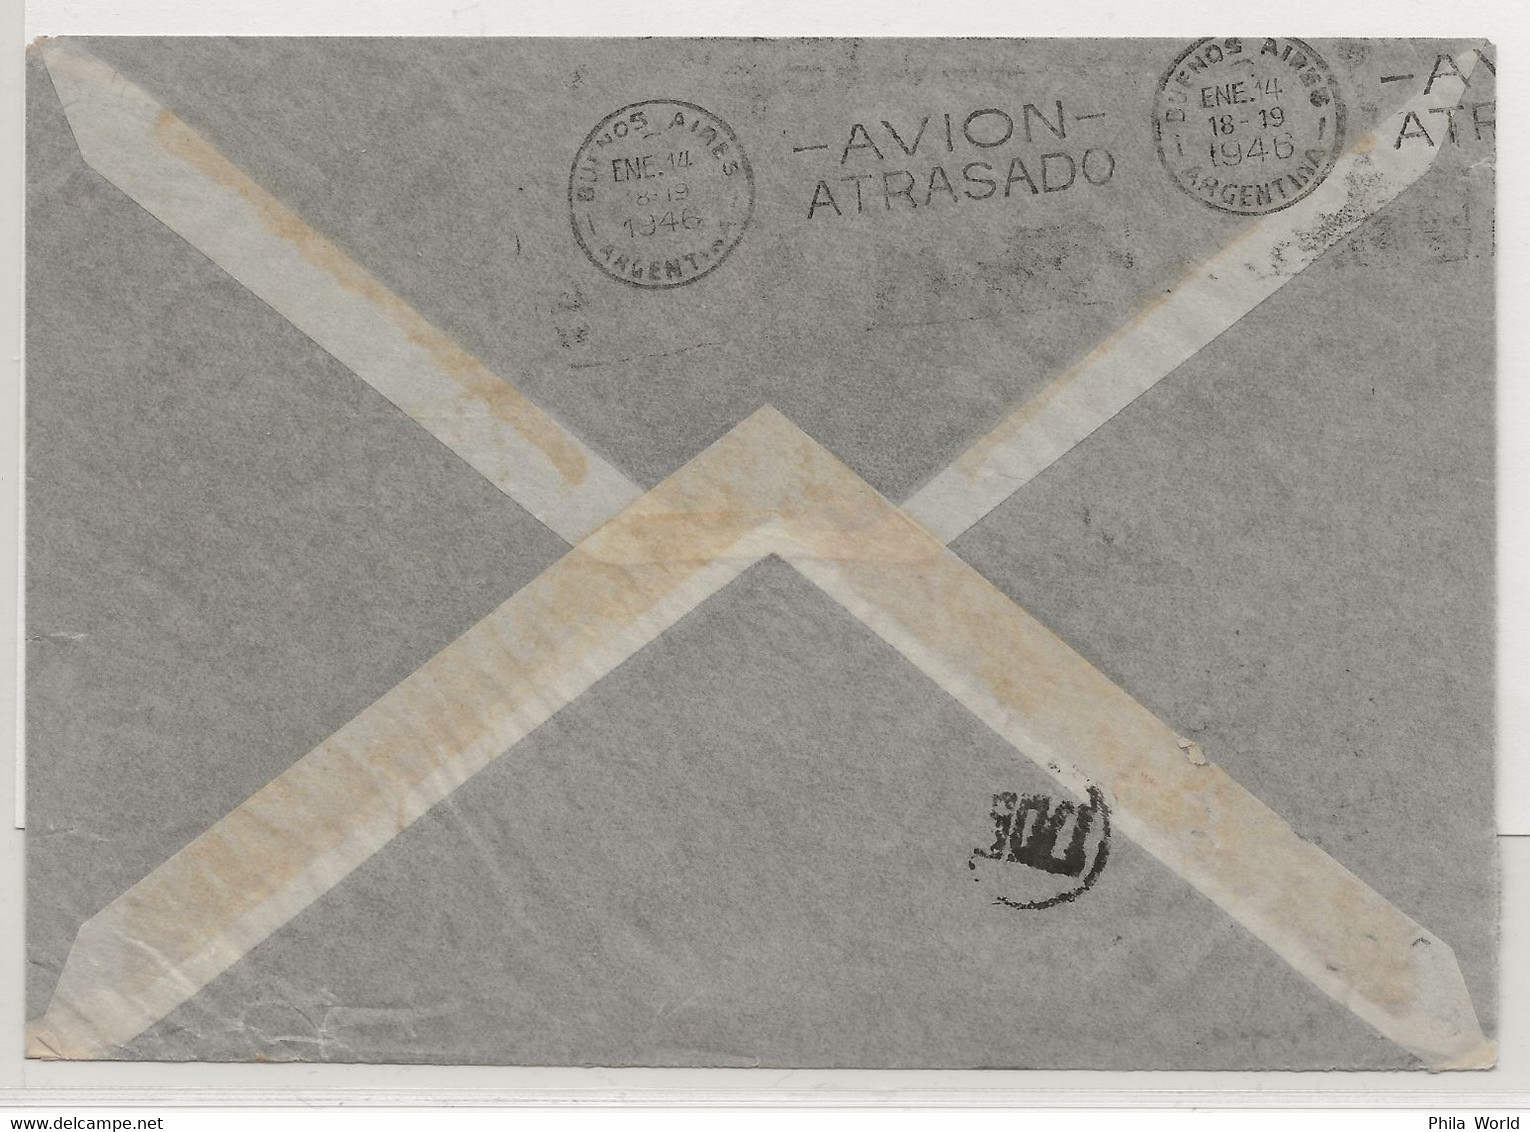 VOL AVION ACCIDENTE - 1946 SUEDE - ARGENTINE Avec Cachet AVION ATRASADO Départ GOTEBORG Air Mail Crash Cover - Cartas & Documentos